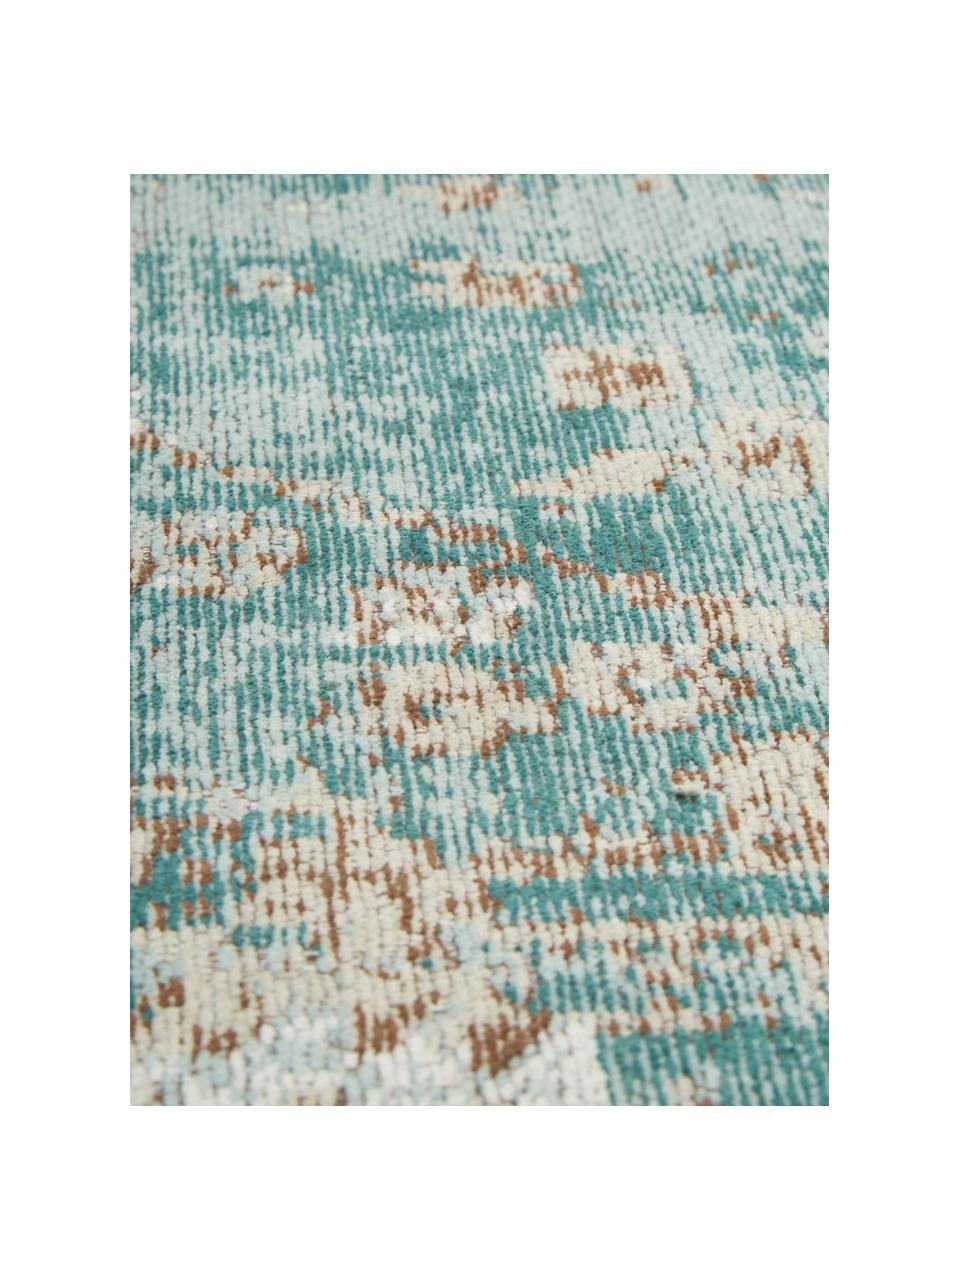 Ručně tkaný kulatý žinylkový vintage koberec Rimini, Tyrkysová zelená, béžová, hnědá, Ø 120 cm (velikost S)